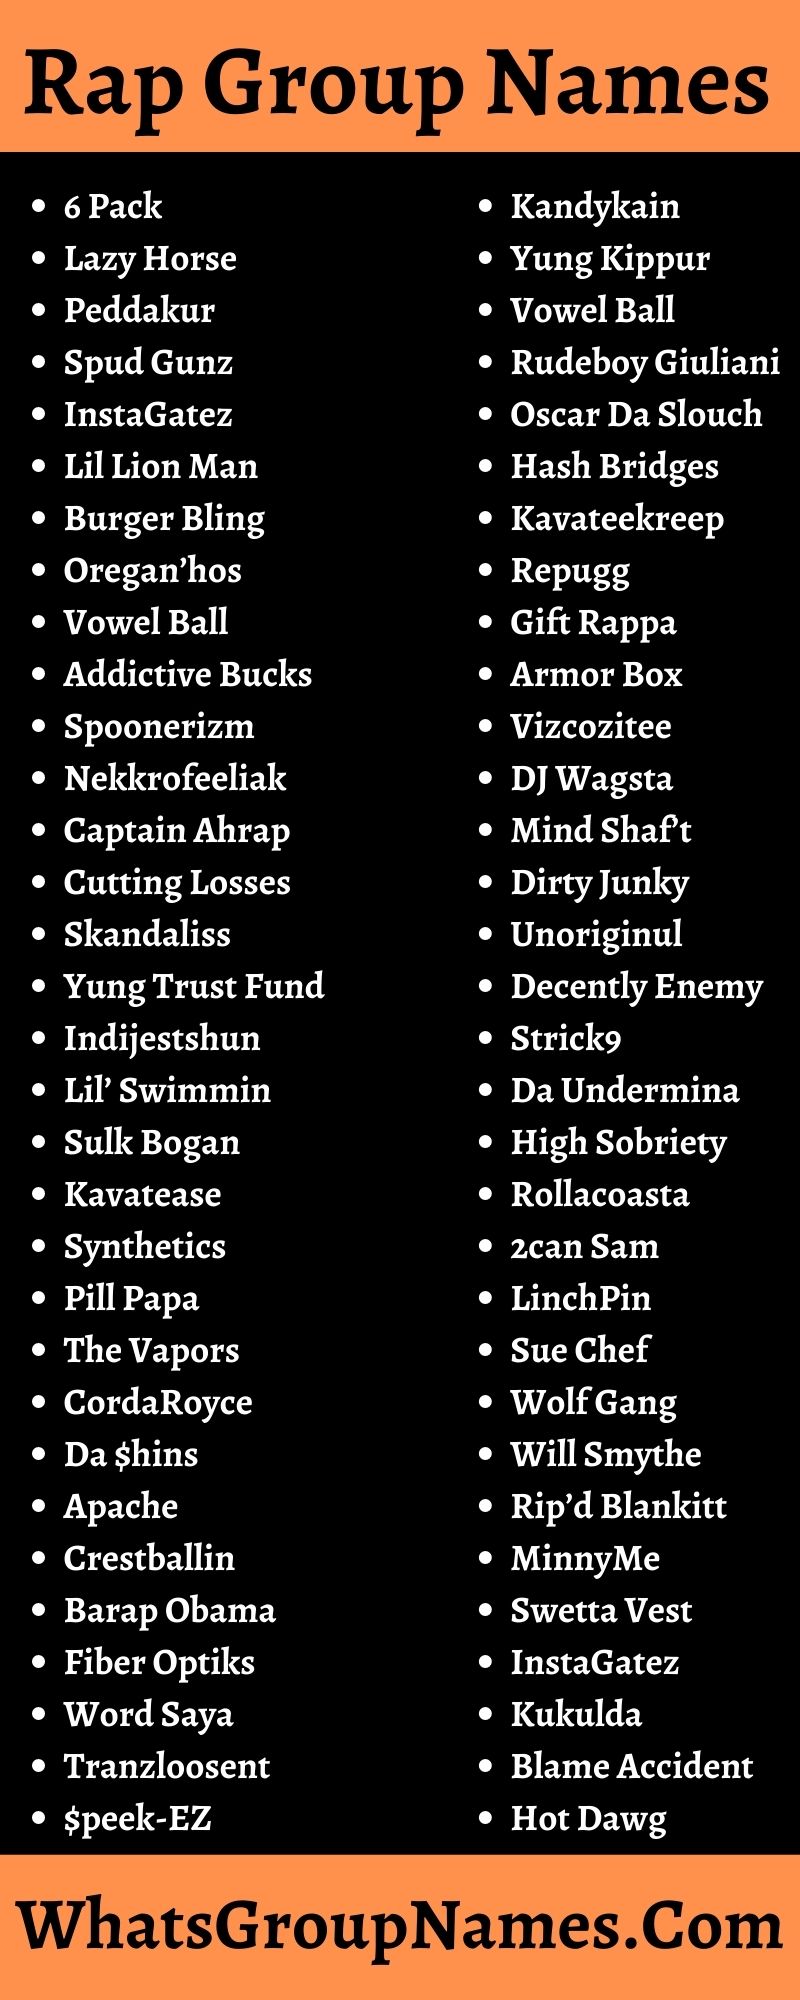  nazwy grup rapowych